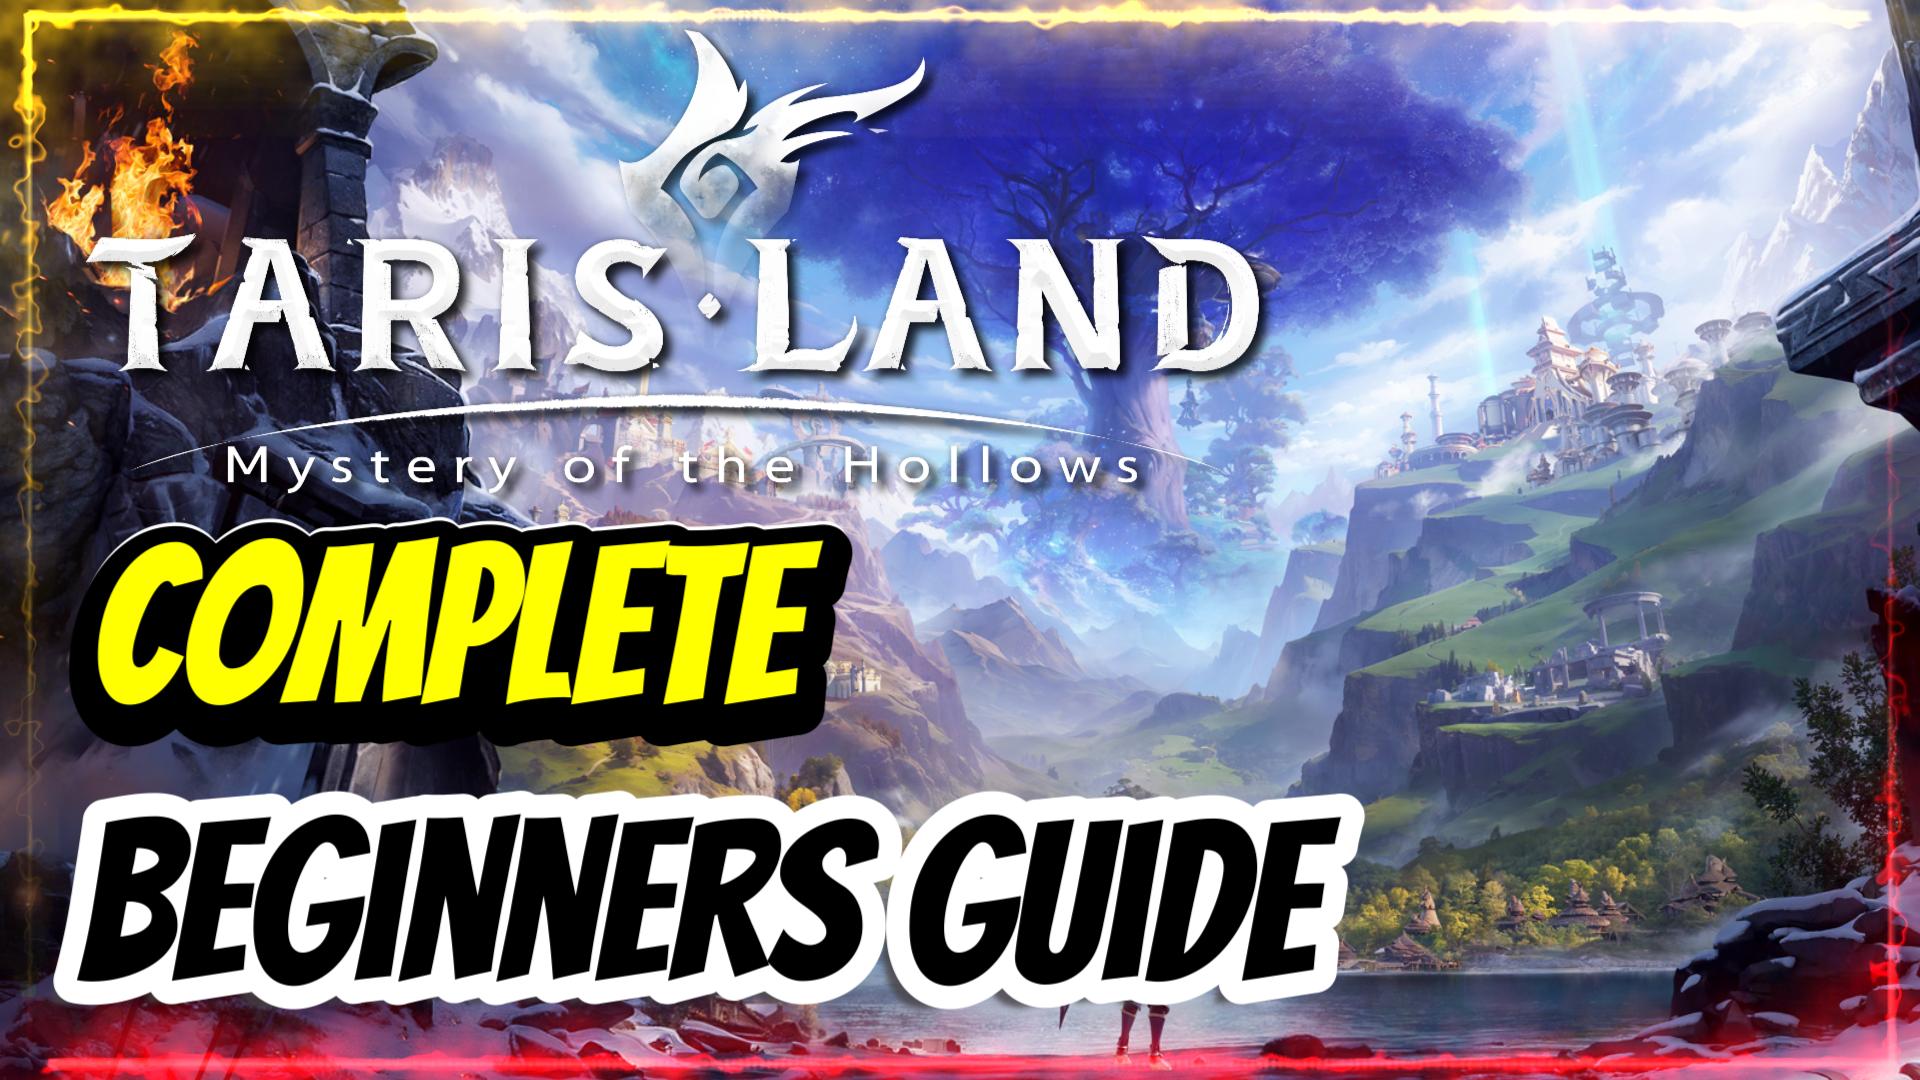 Tarisland Complete Beginners Guide